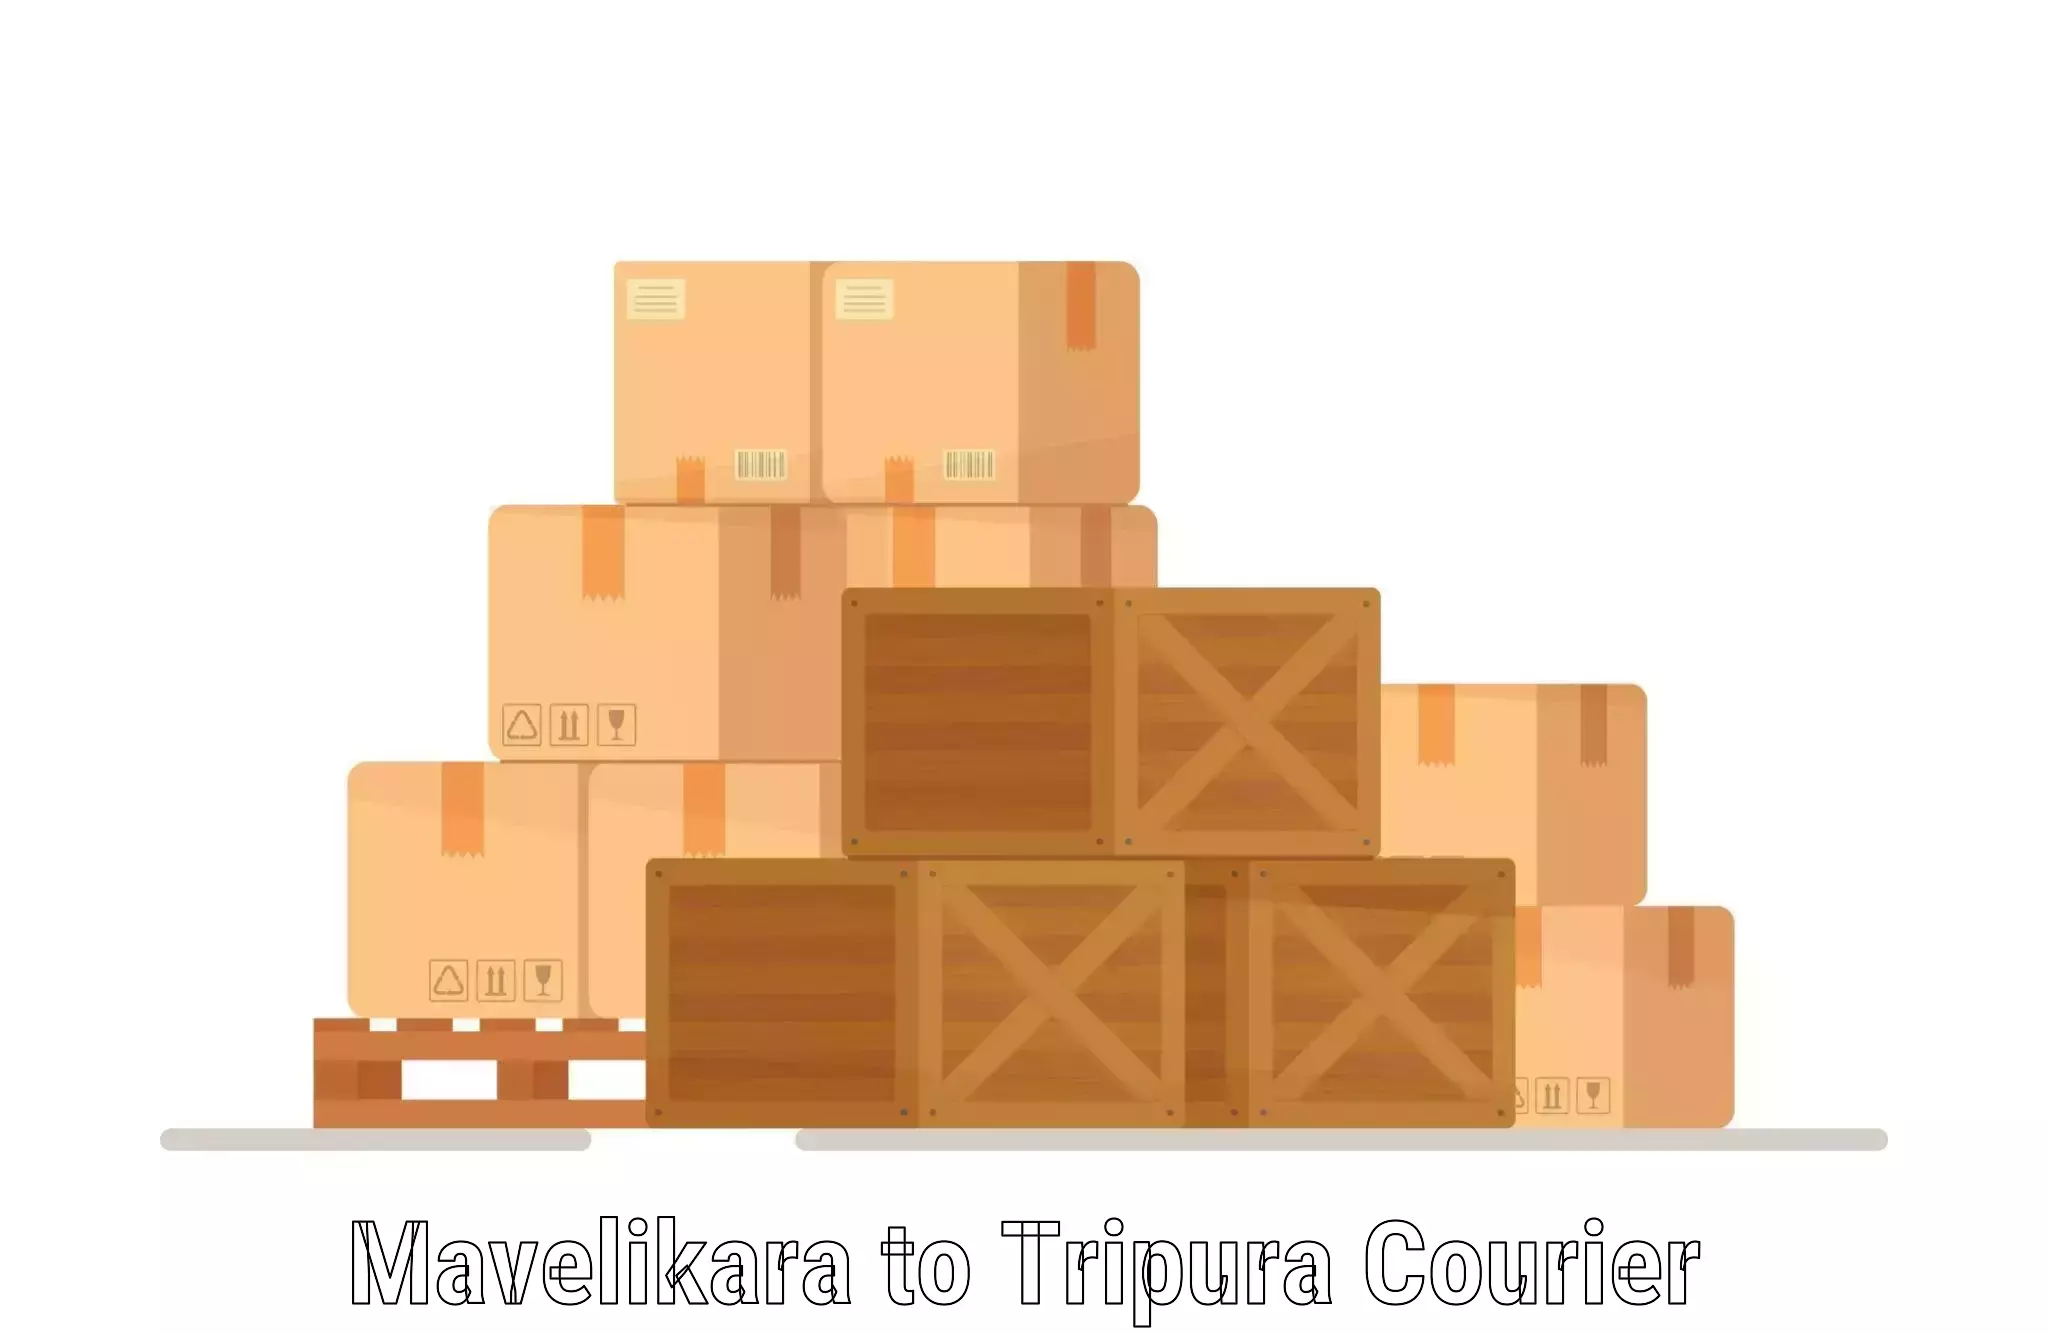 Customer-centric shipping Mavelikara to Aambasa